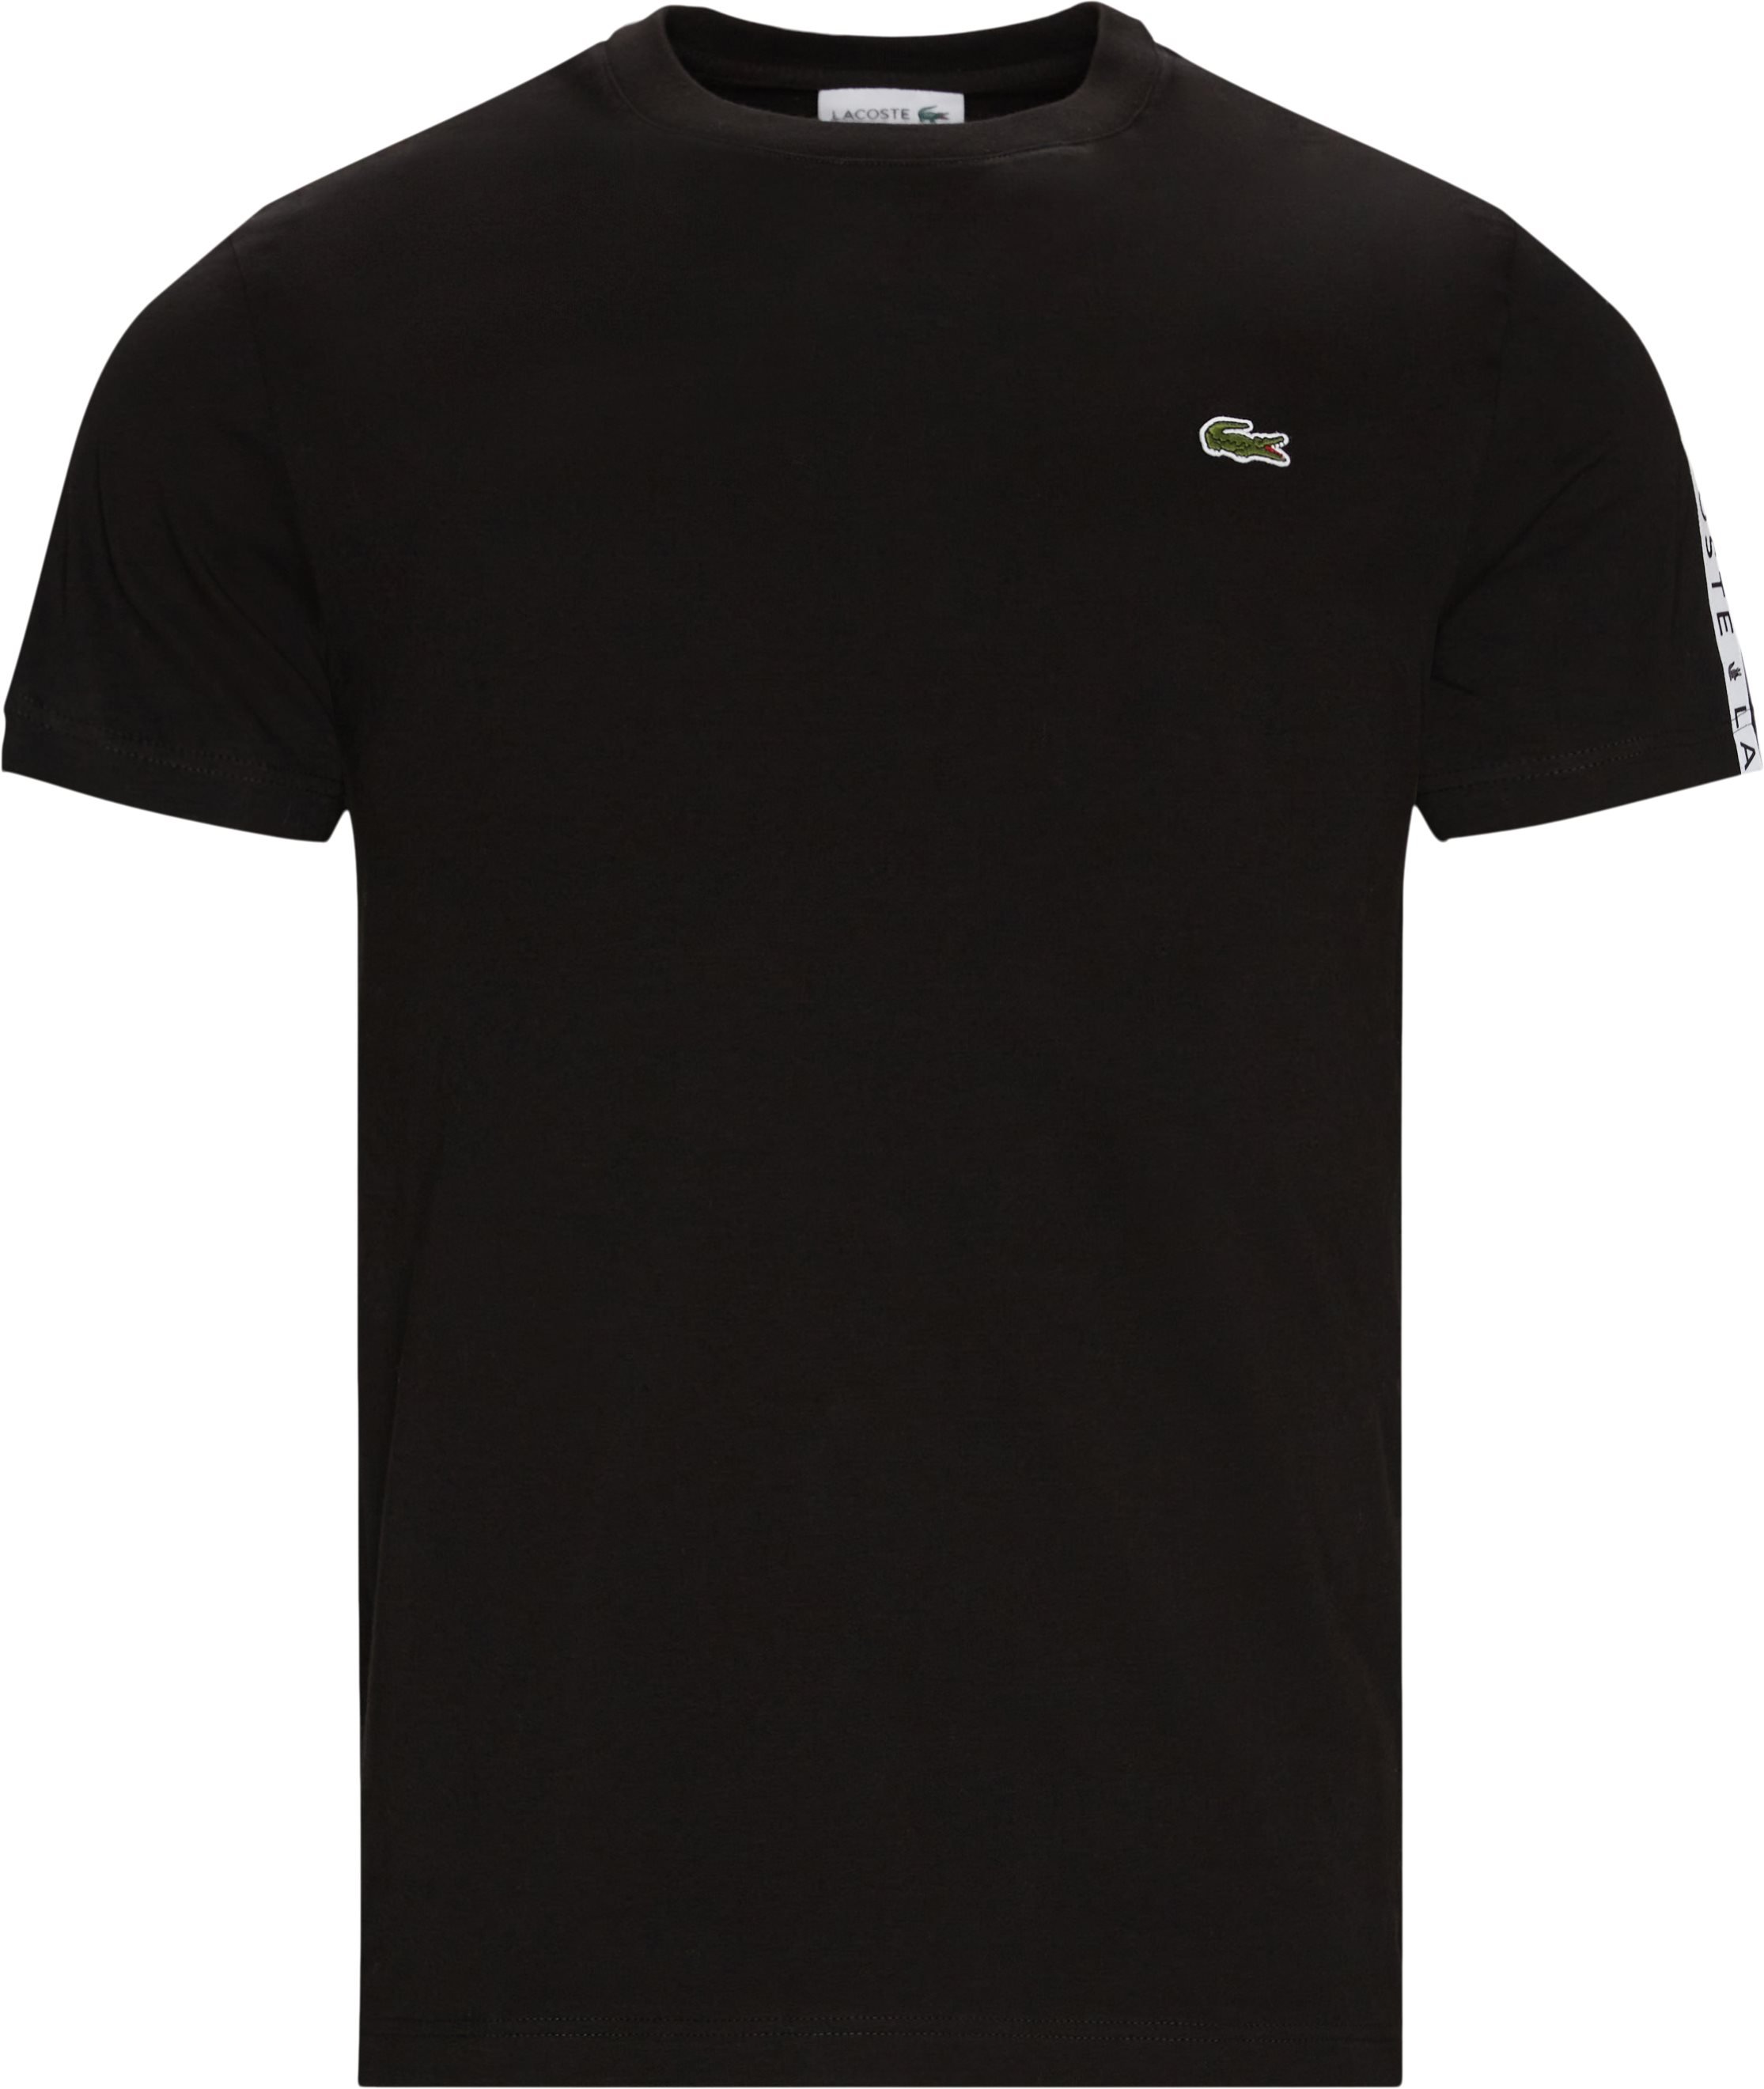 Th7079 Tee - T-shirts - Regular fit - Black